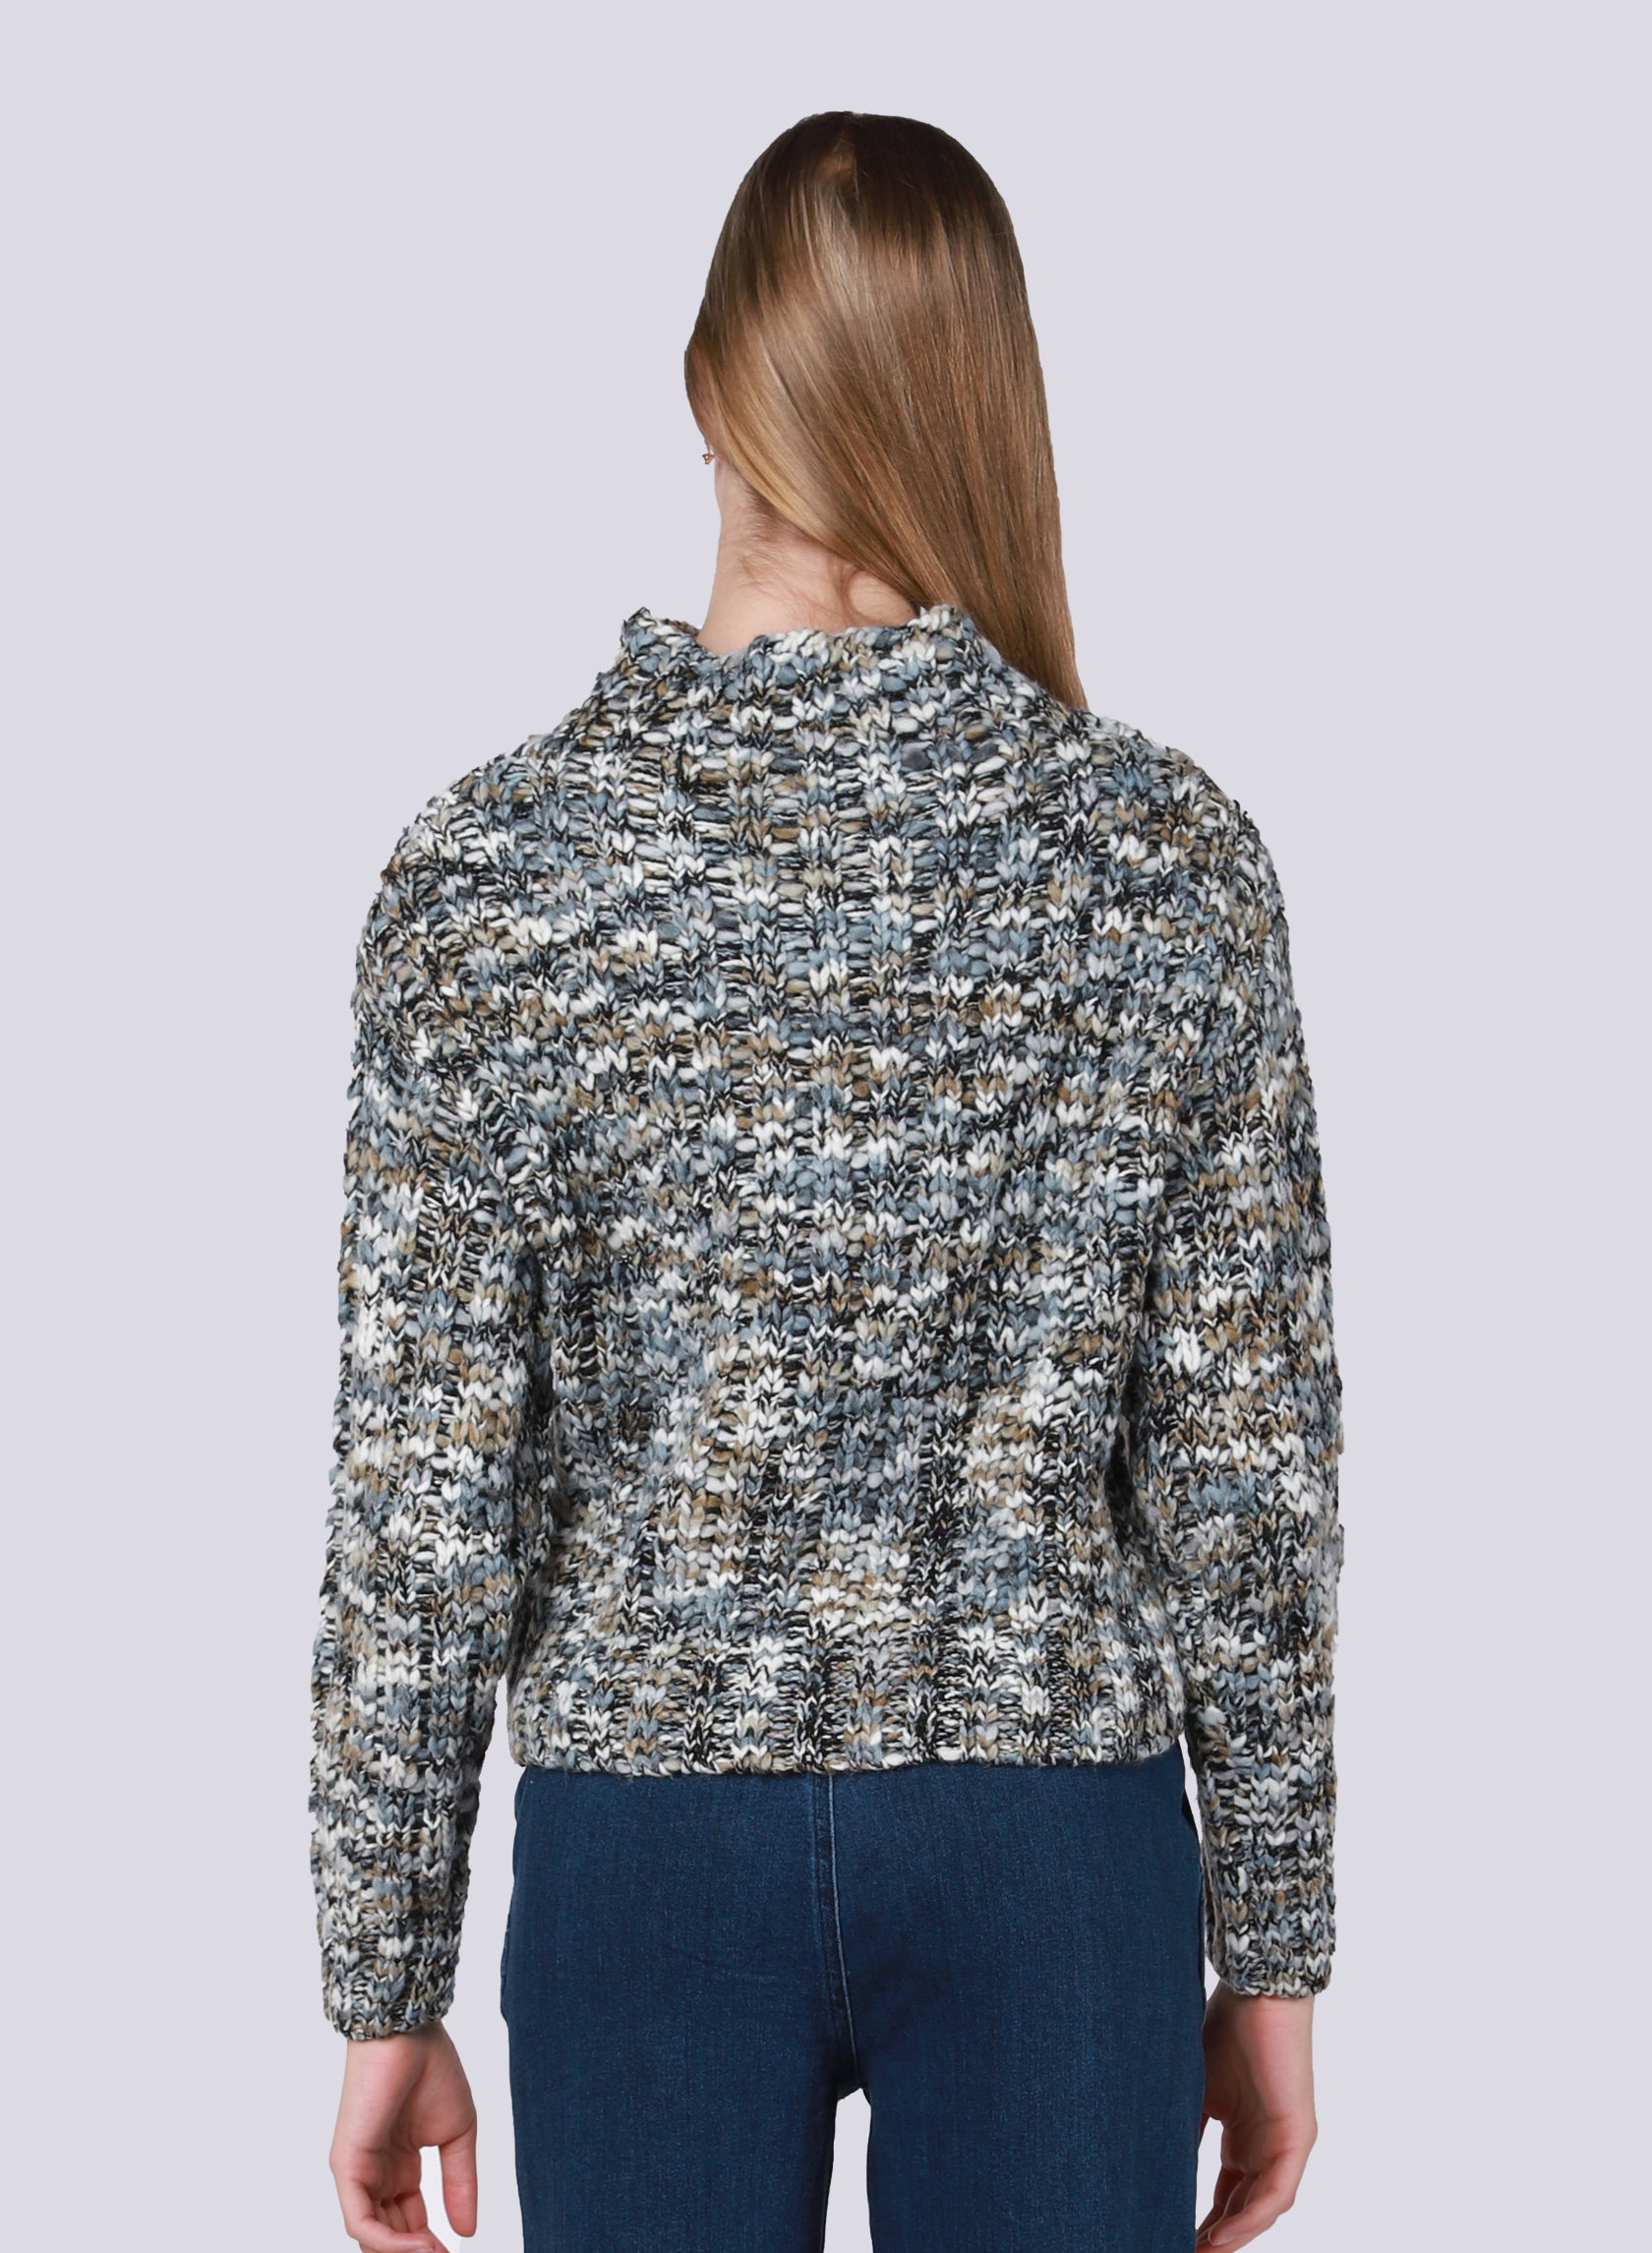 Textured Stitch Sweater